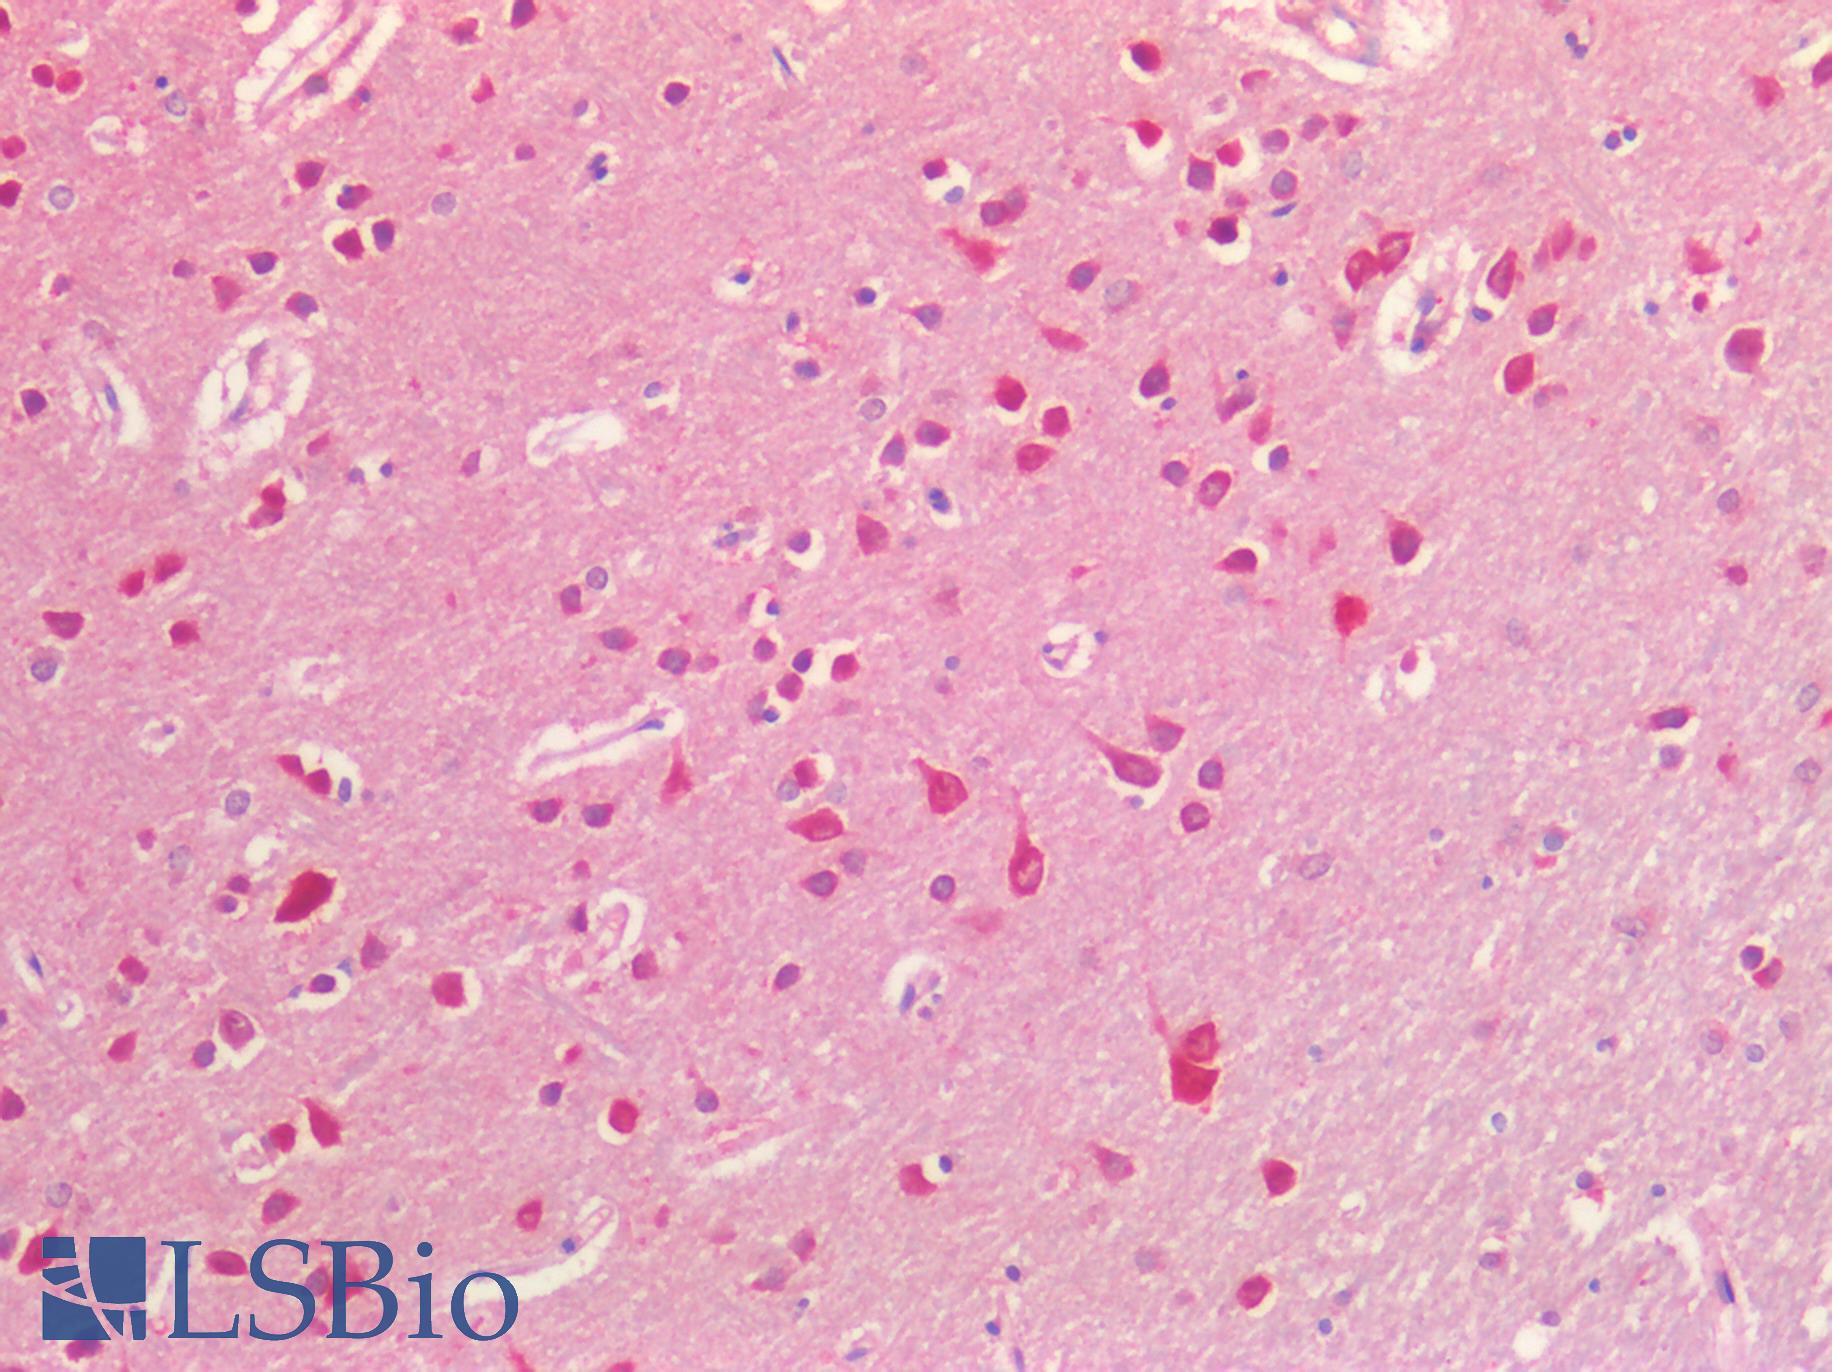 EFNB2 / Ephrin B2 Antibody - Human Brain, Cortex: Formalin-Fixed, Paraffin-Embedded (FFPE)